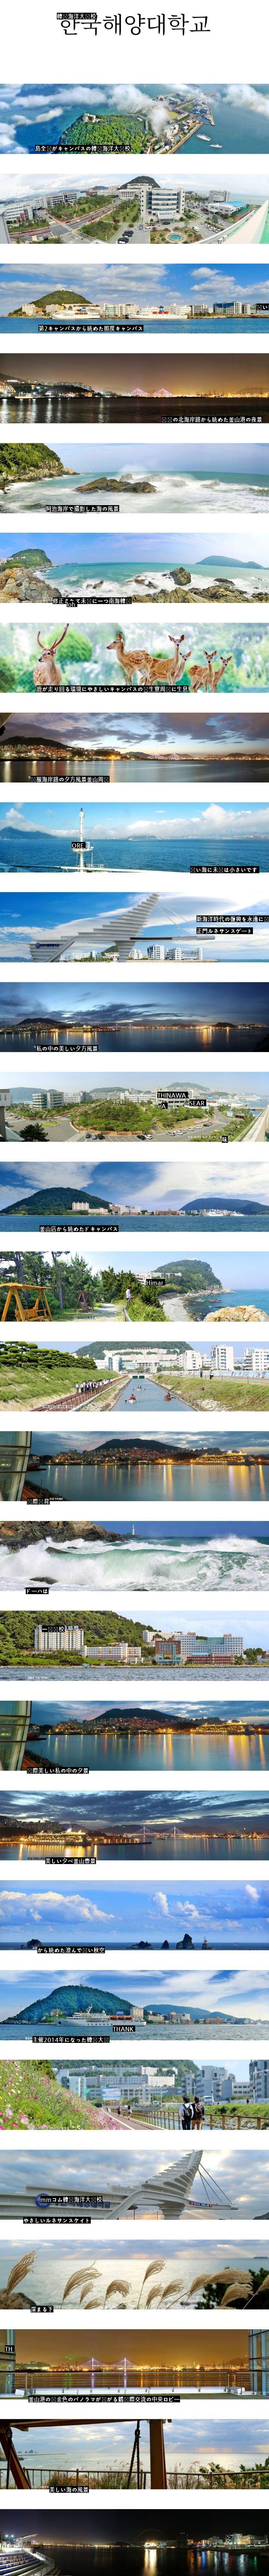 島全体がキャンパスである韓国の大学jpg